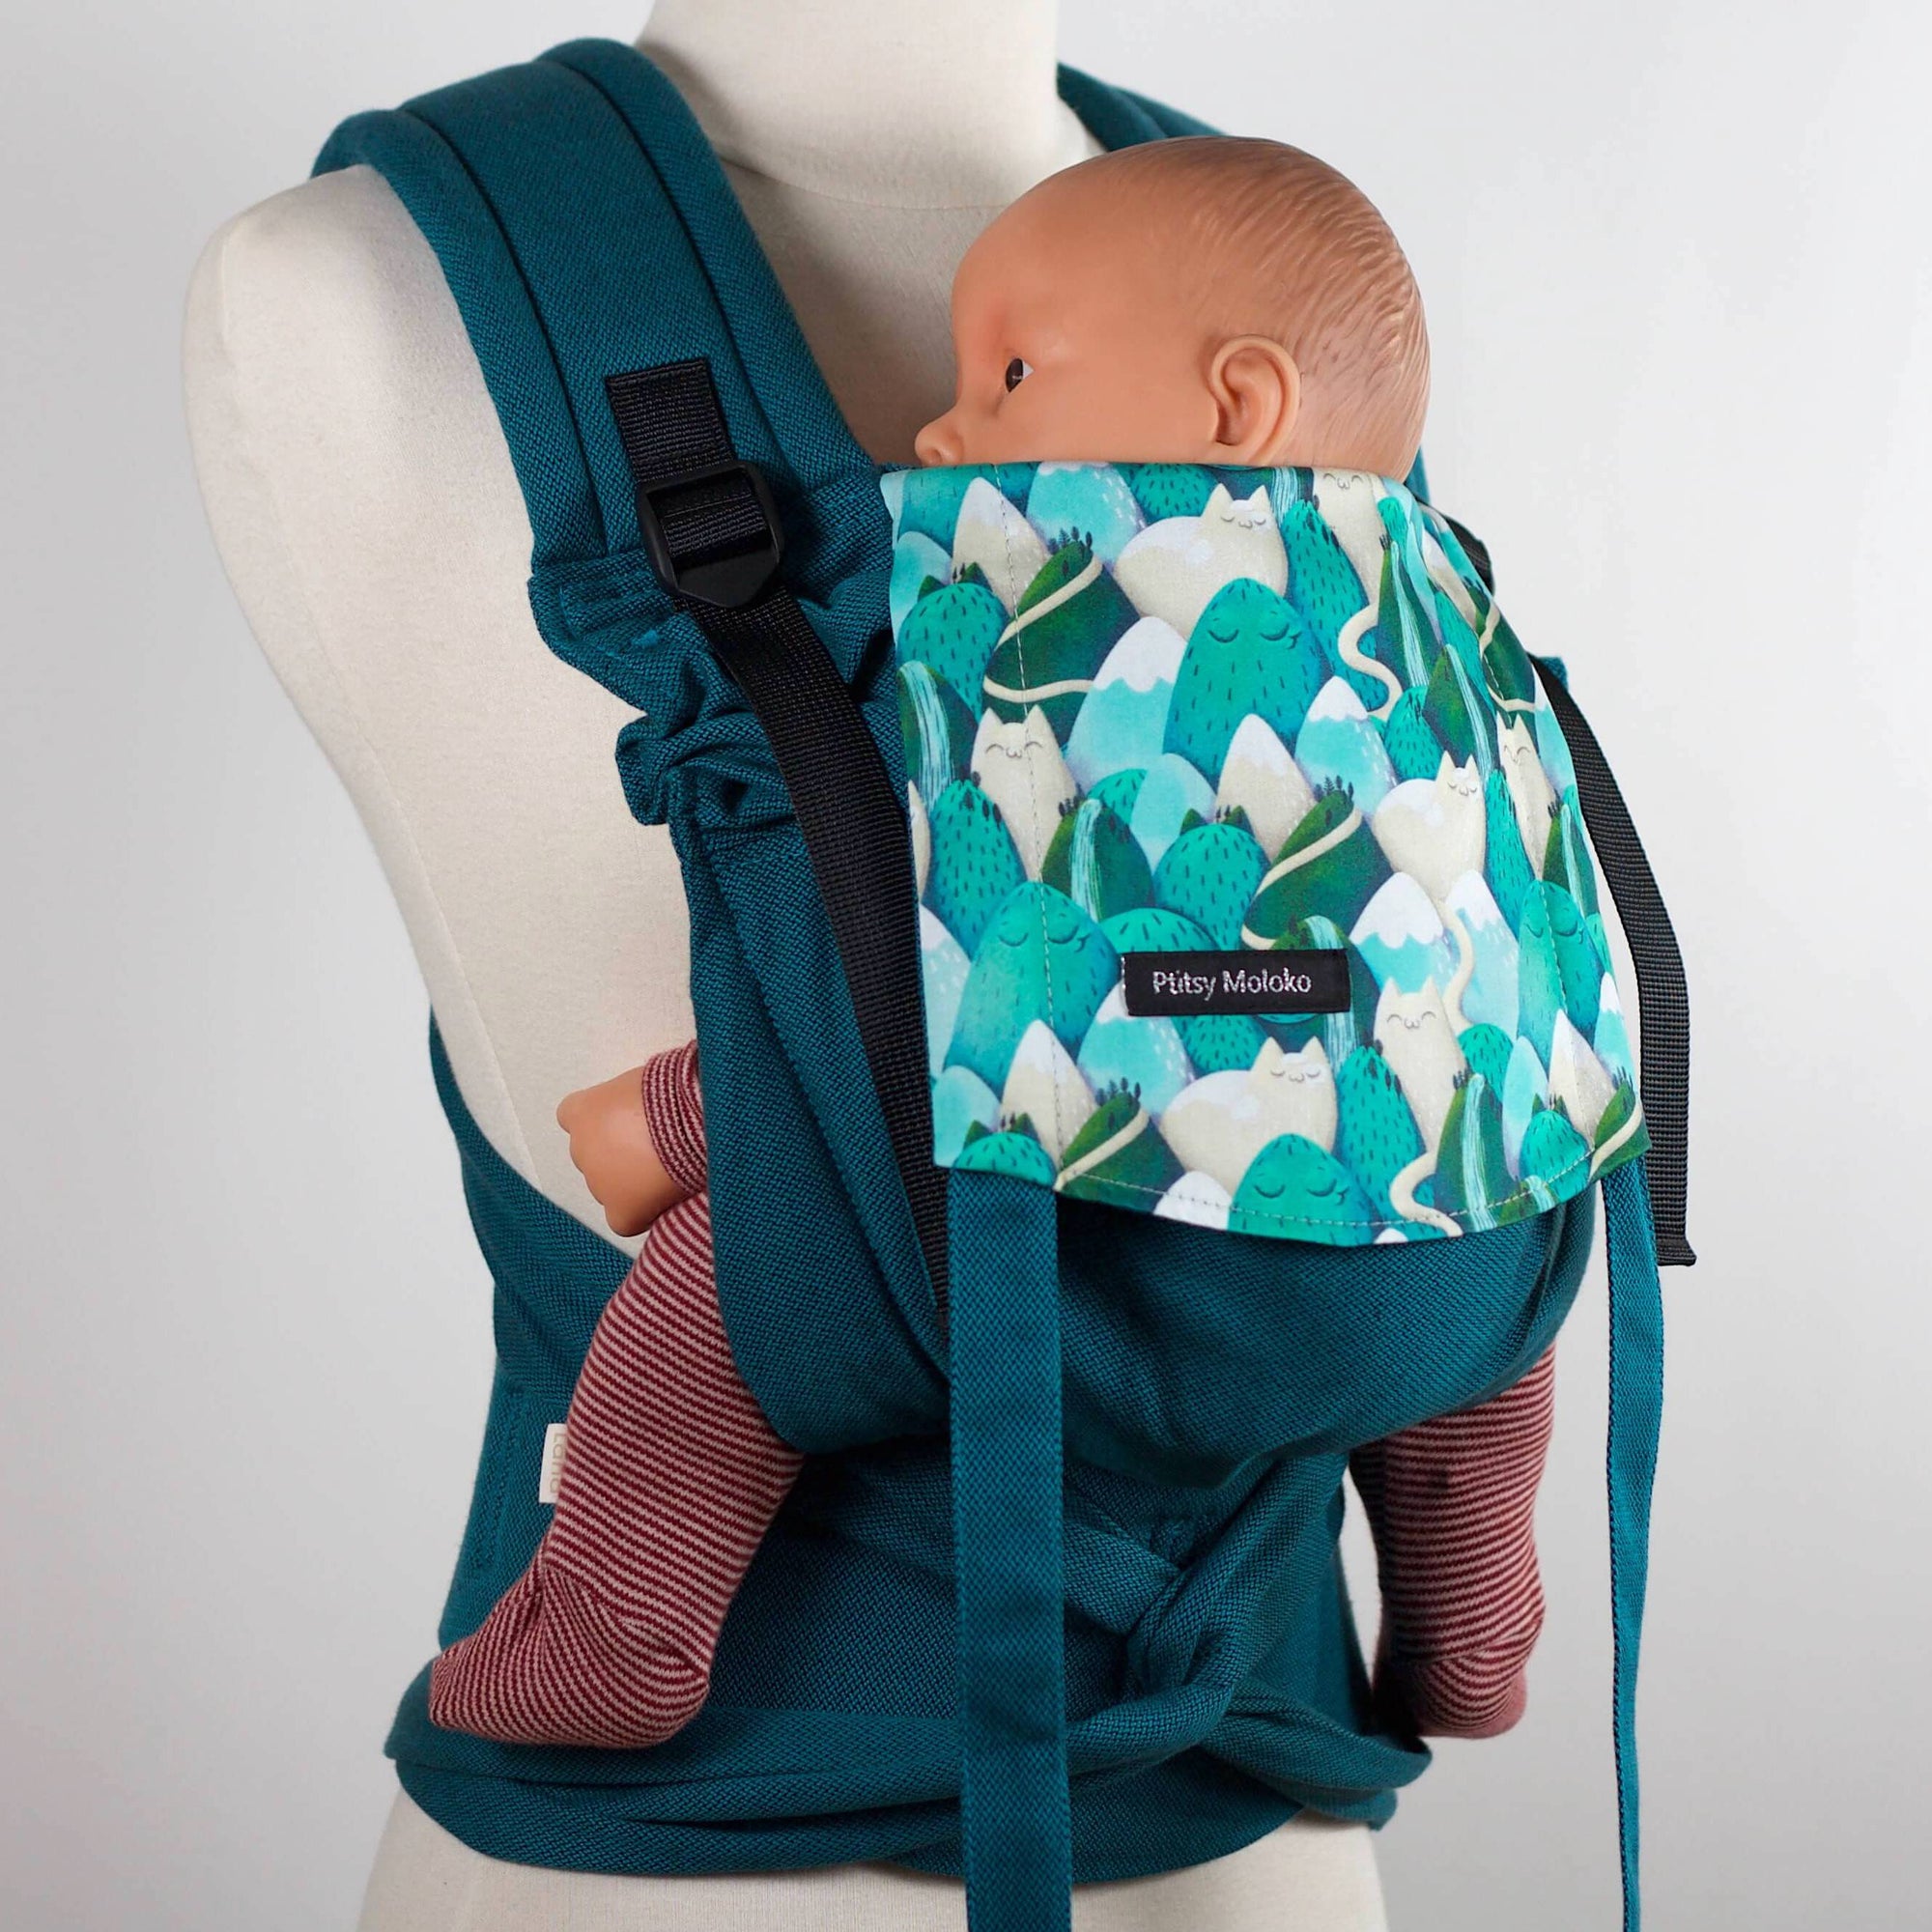 Porte-bébé, dès la naissance, évolutif et ajustable. Très confortable et facile à installer.